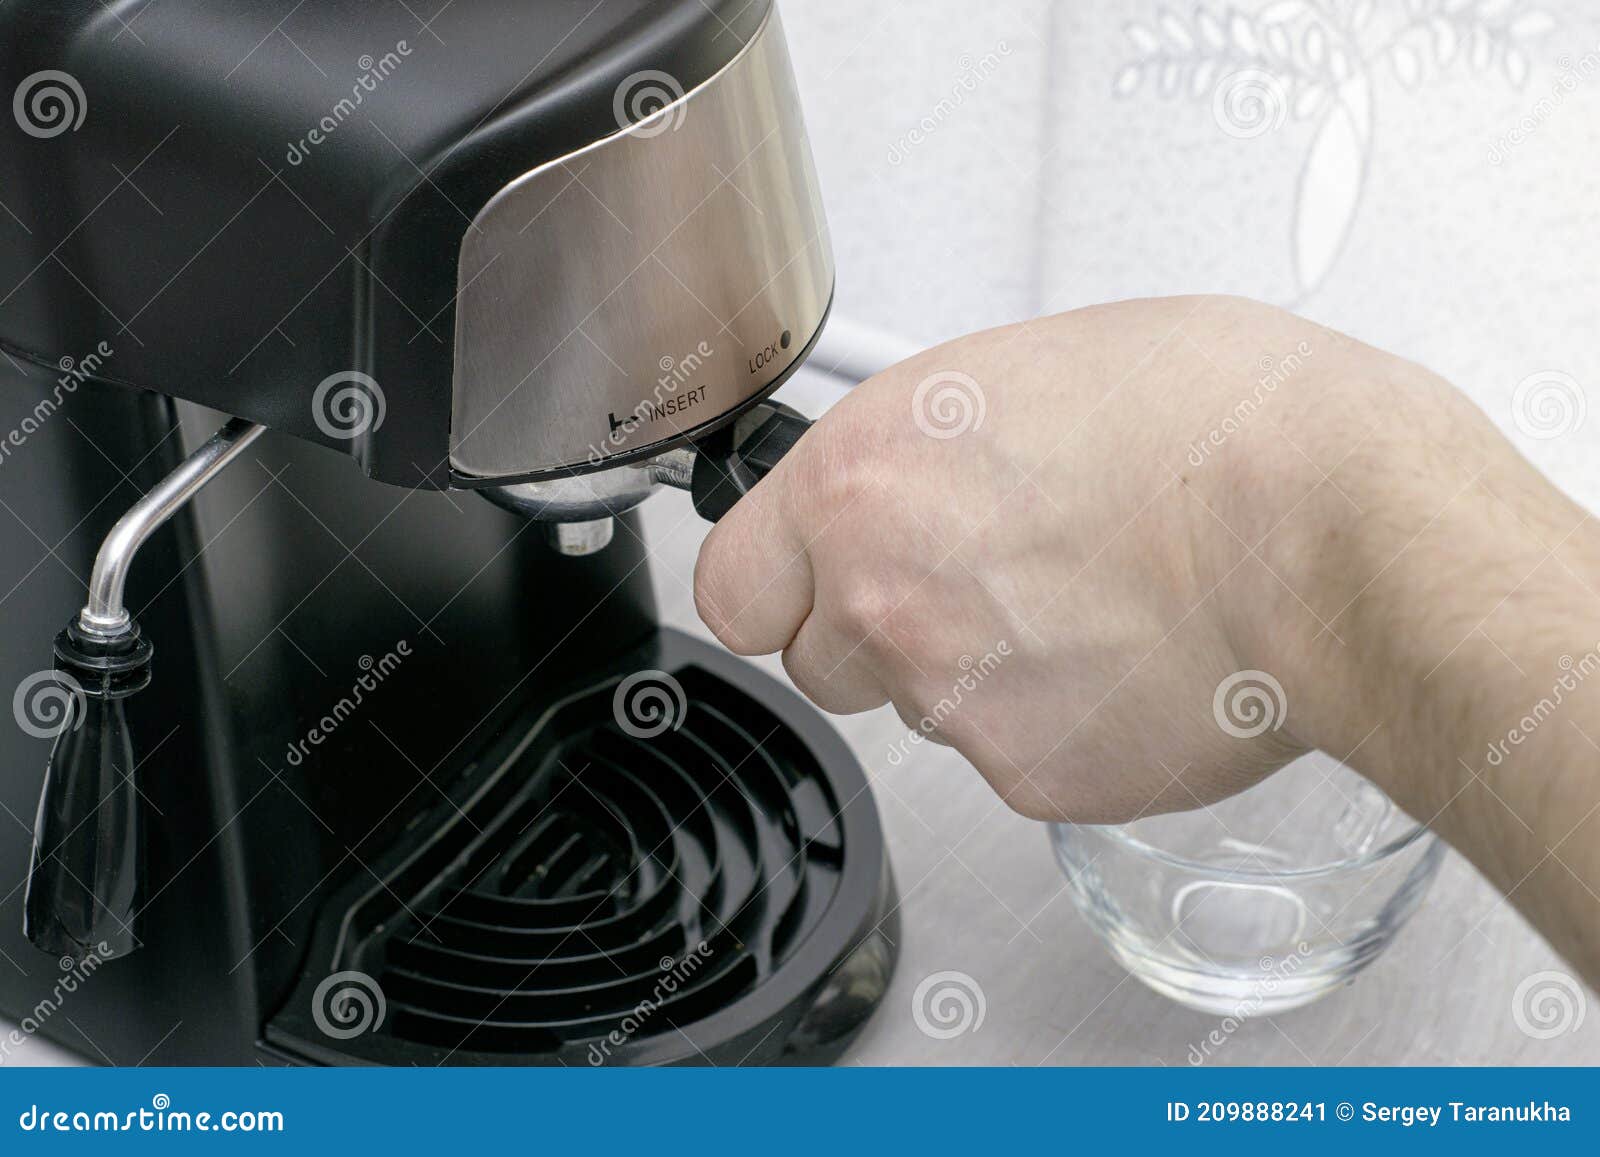 Una Persona Prepara Café En Una Cafetera Y Inserta Un Dispensador